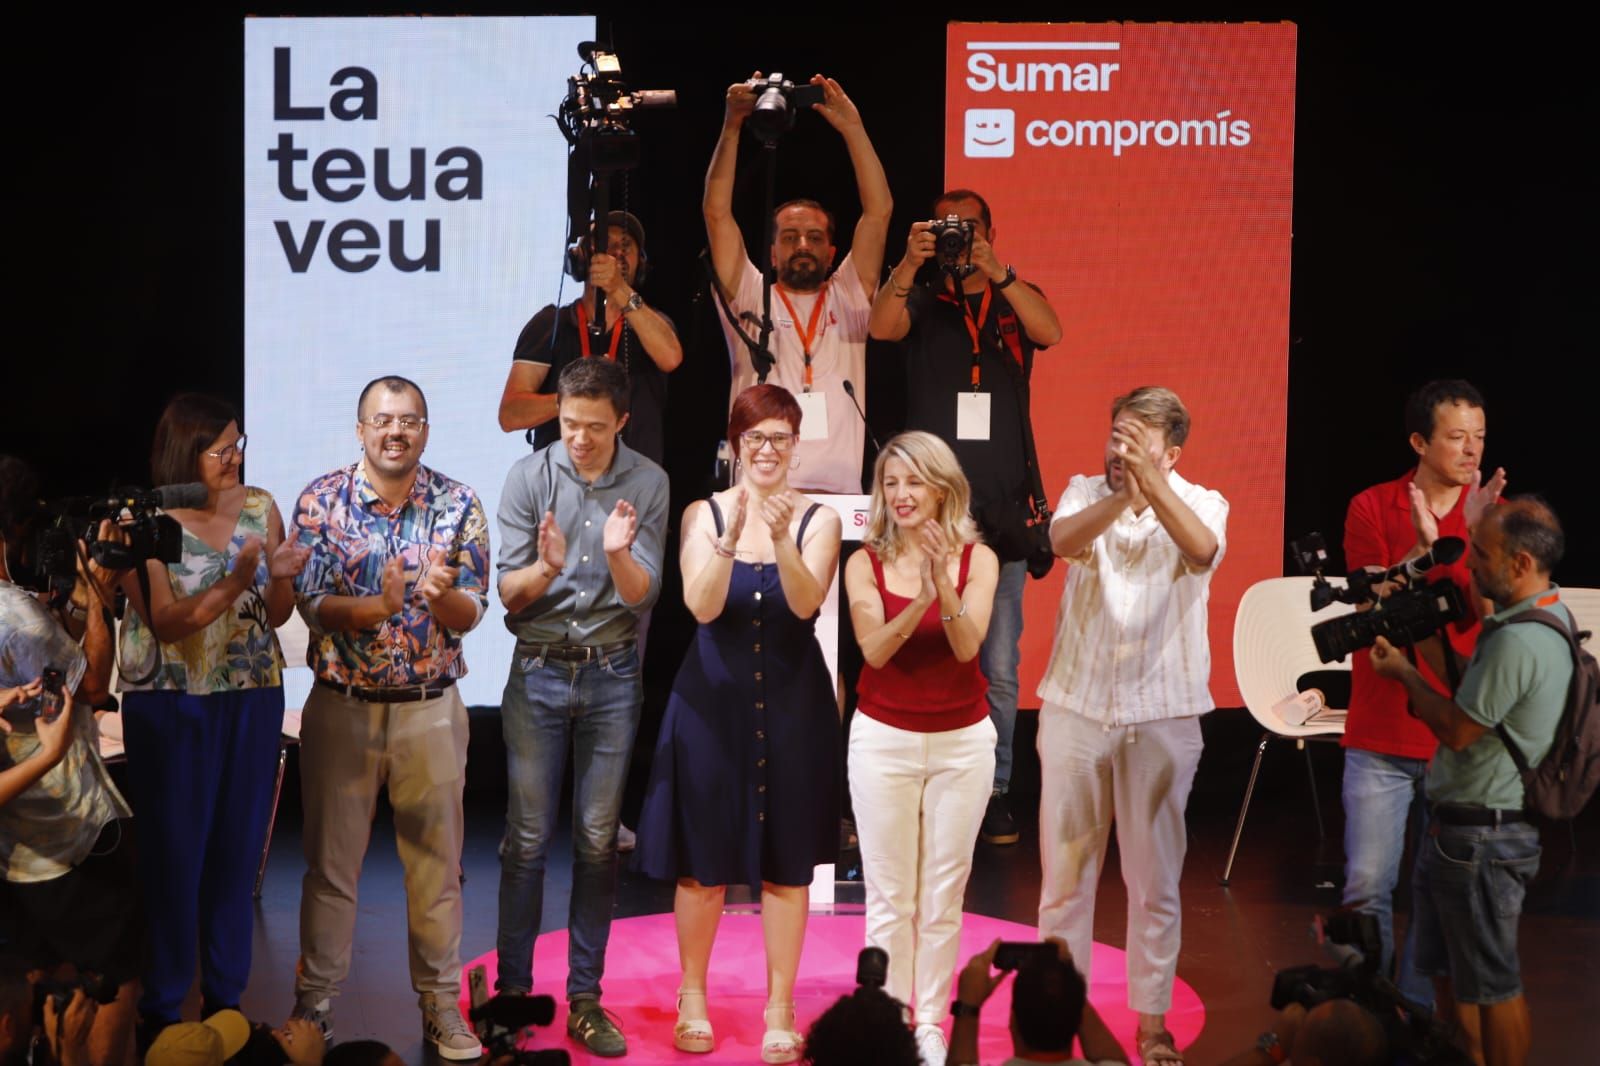 El mitin de Sumar en València, en imágenes